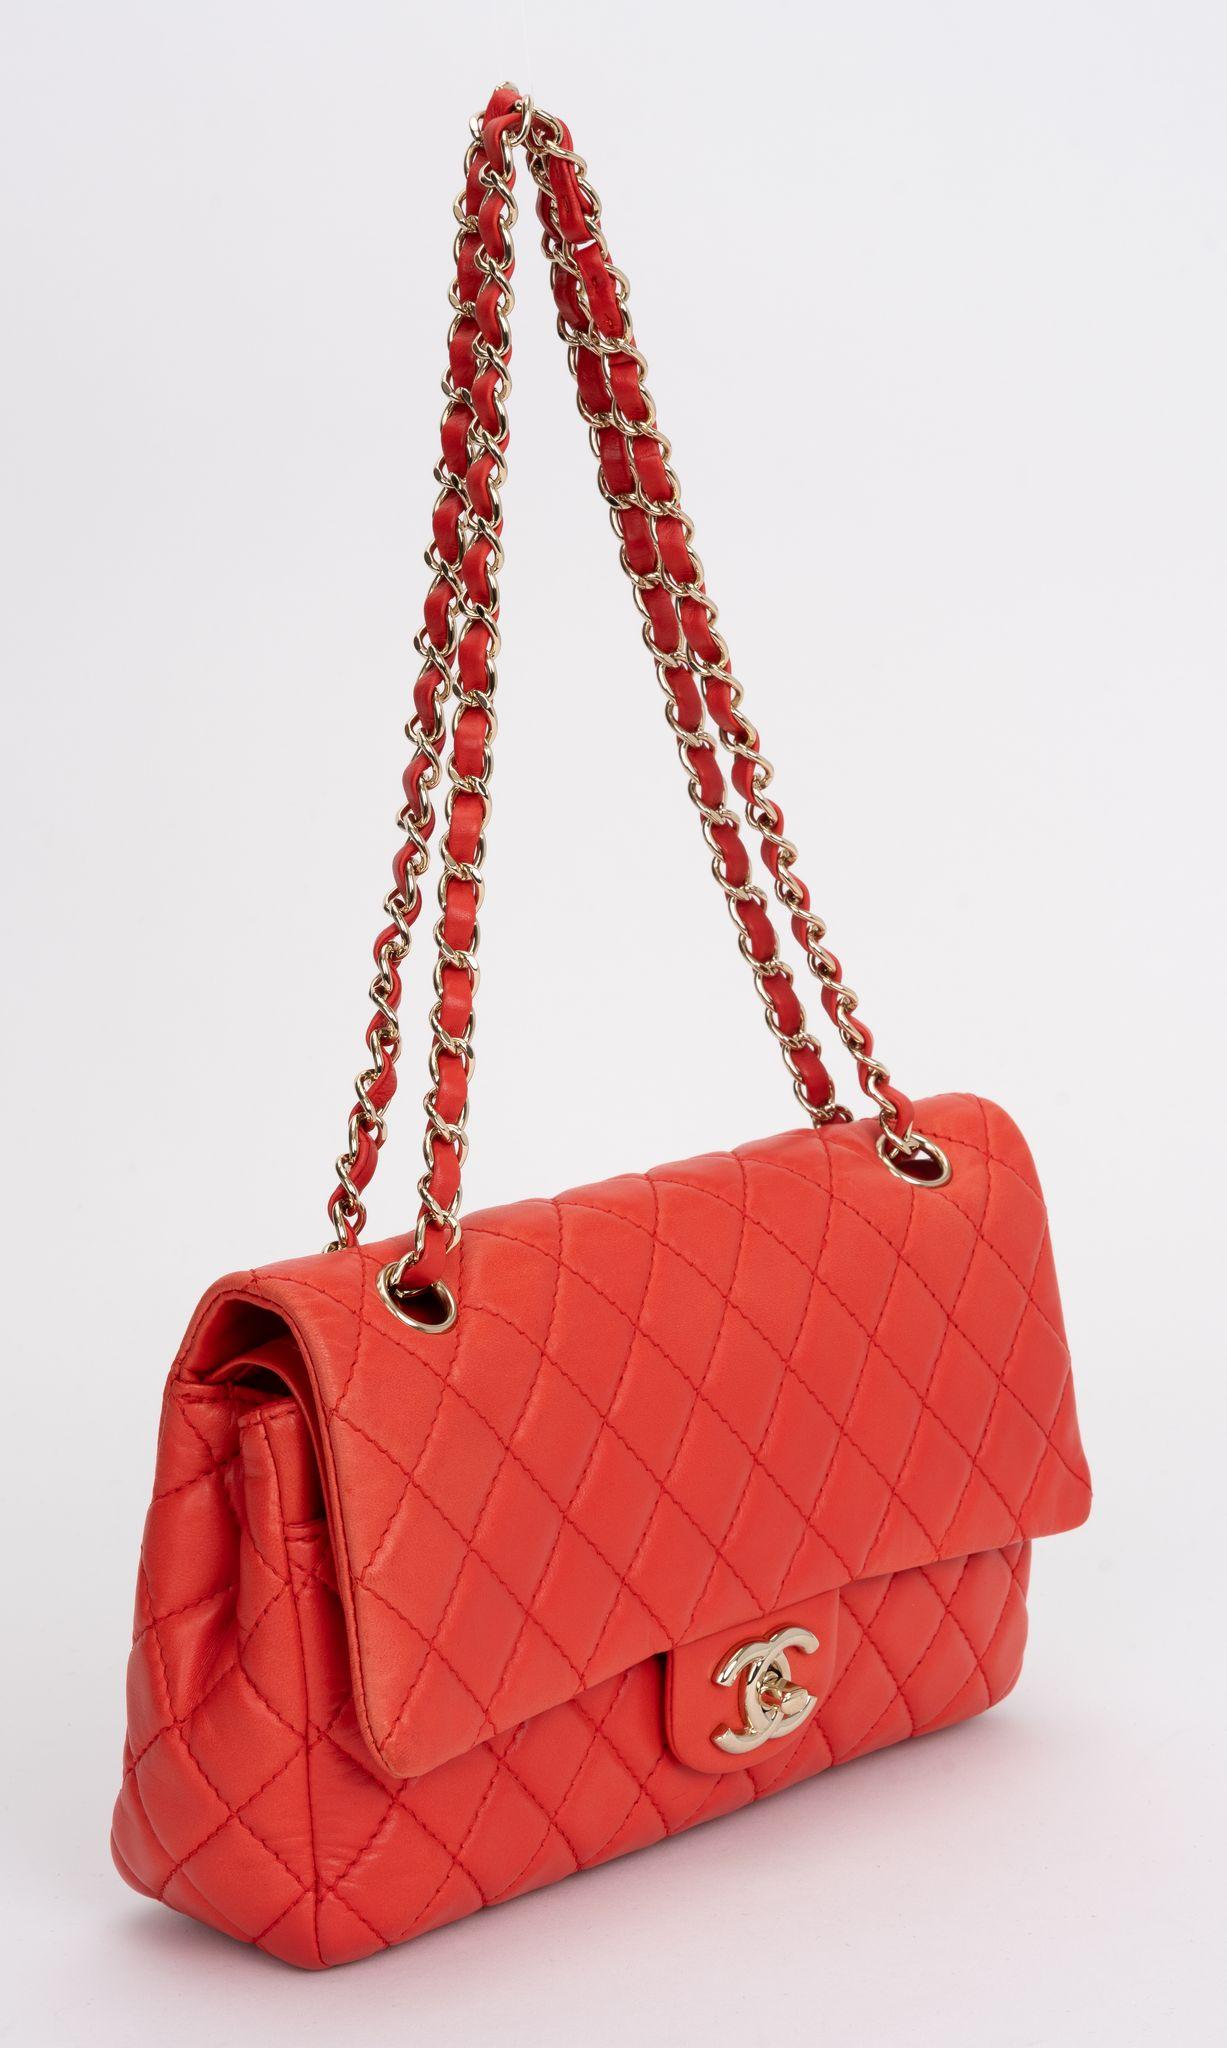 Le sac à rabat classique matelassé rouge de Chanel en cuir d'agneau est doté d'une bandoulière en cuir à chaîne entrelacée et d'une fermeture à logo CC doré. Il y a une poche zippée à l'intérieur et une pochette arrière à l'extérieur.

Chute